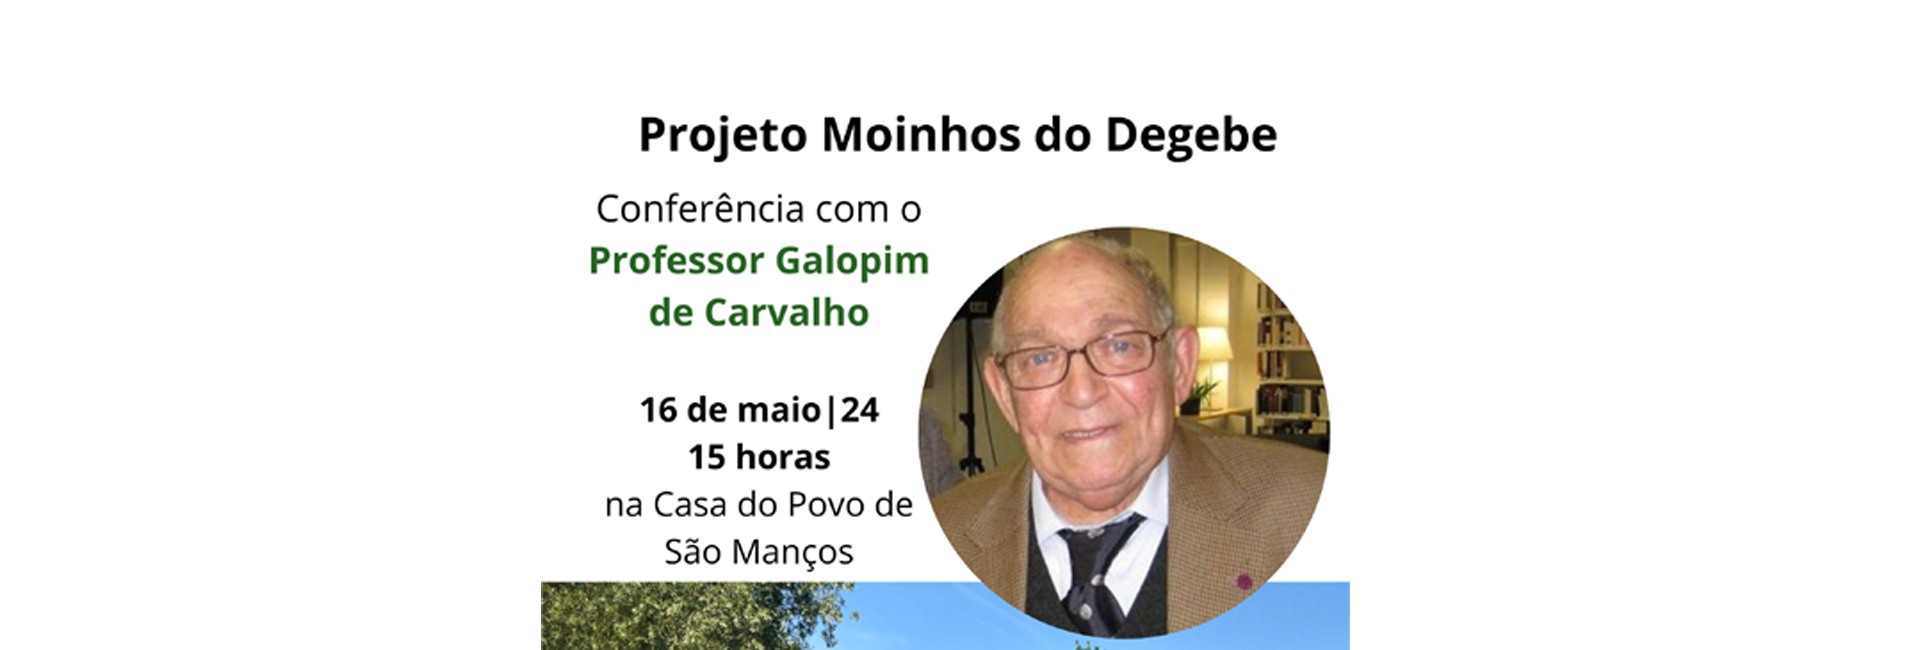 Conferência de encontro com o Professor Galopim de Carvalho sobre o tema “A energia que vem do Sol”